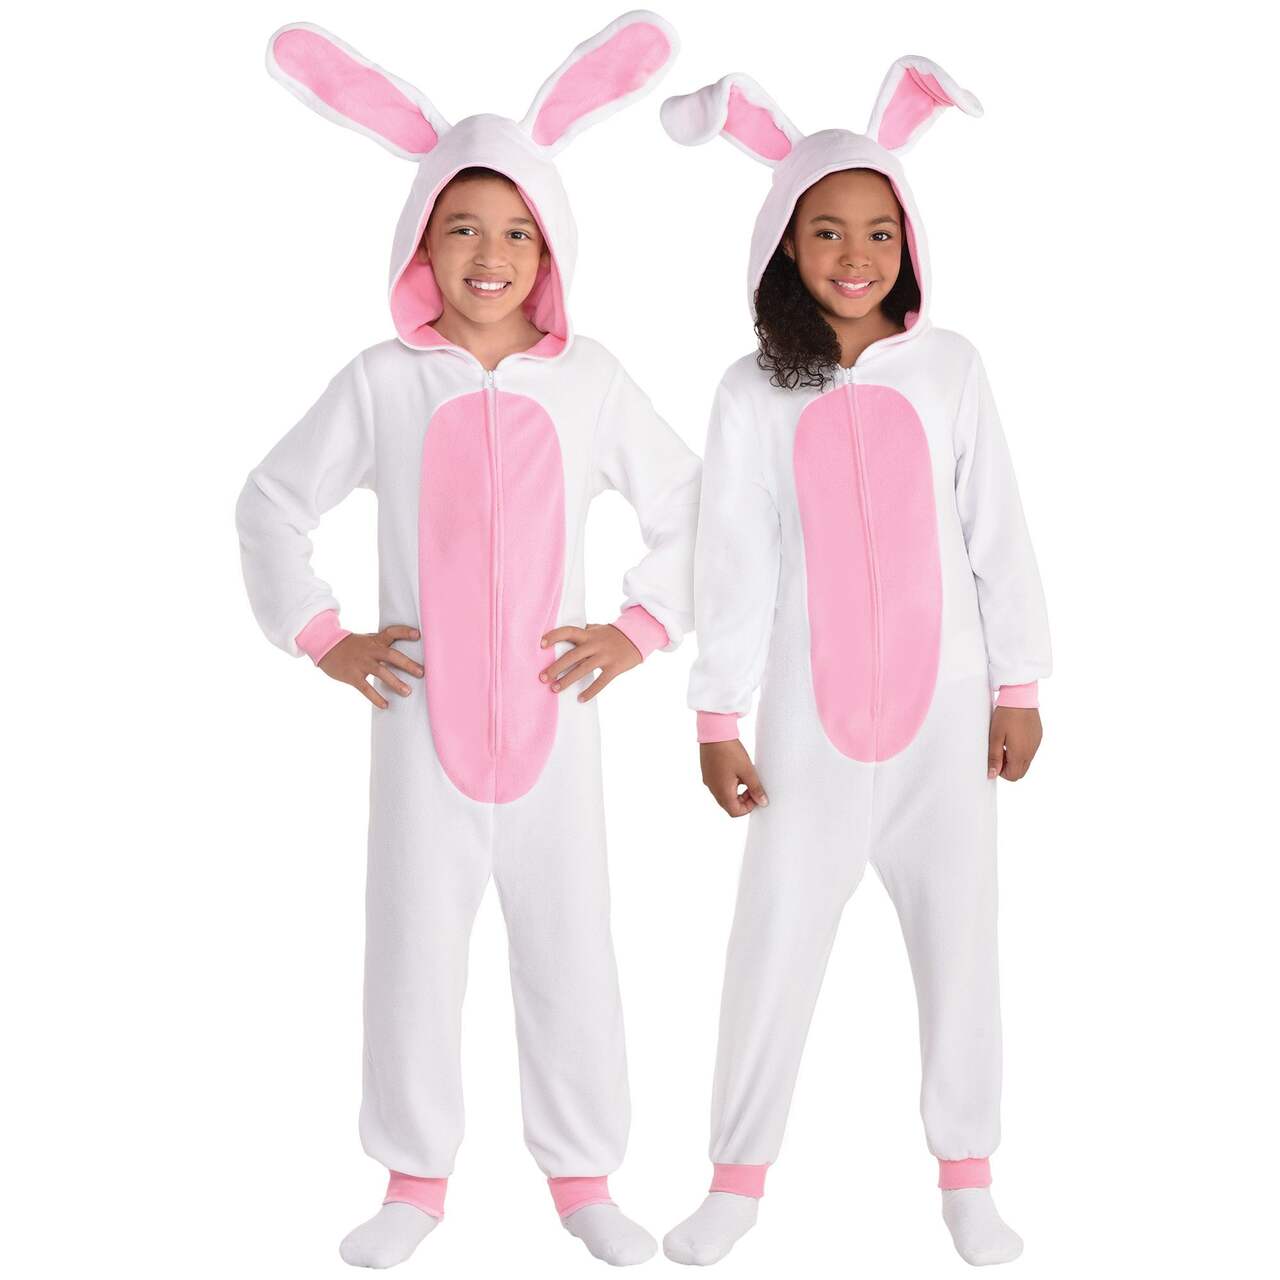 Déguisements et costumes sur le thème de Pâques pour enfants et